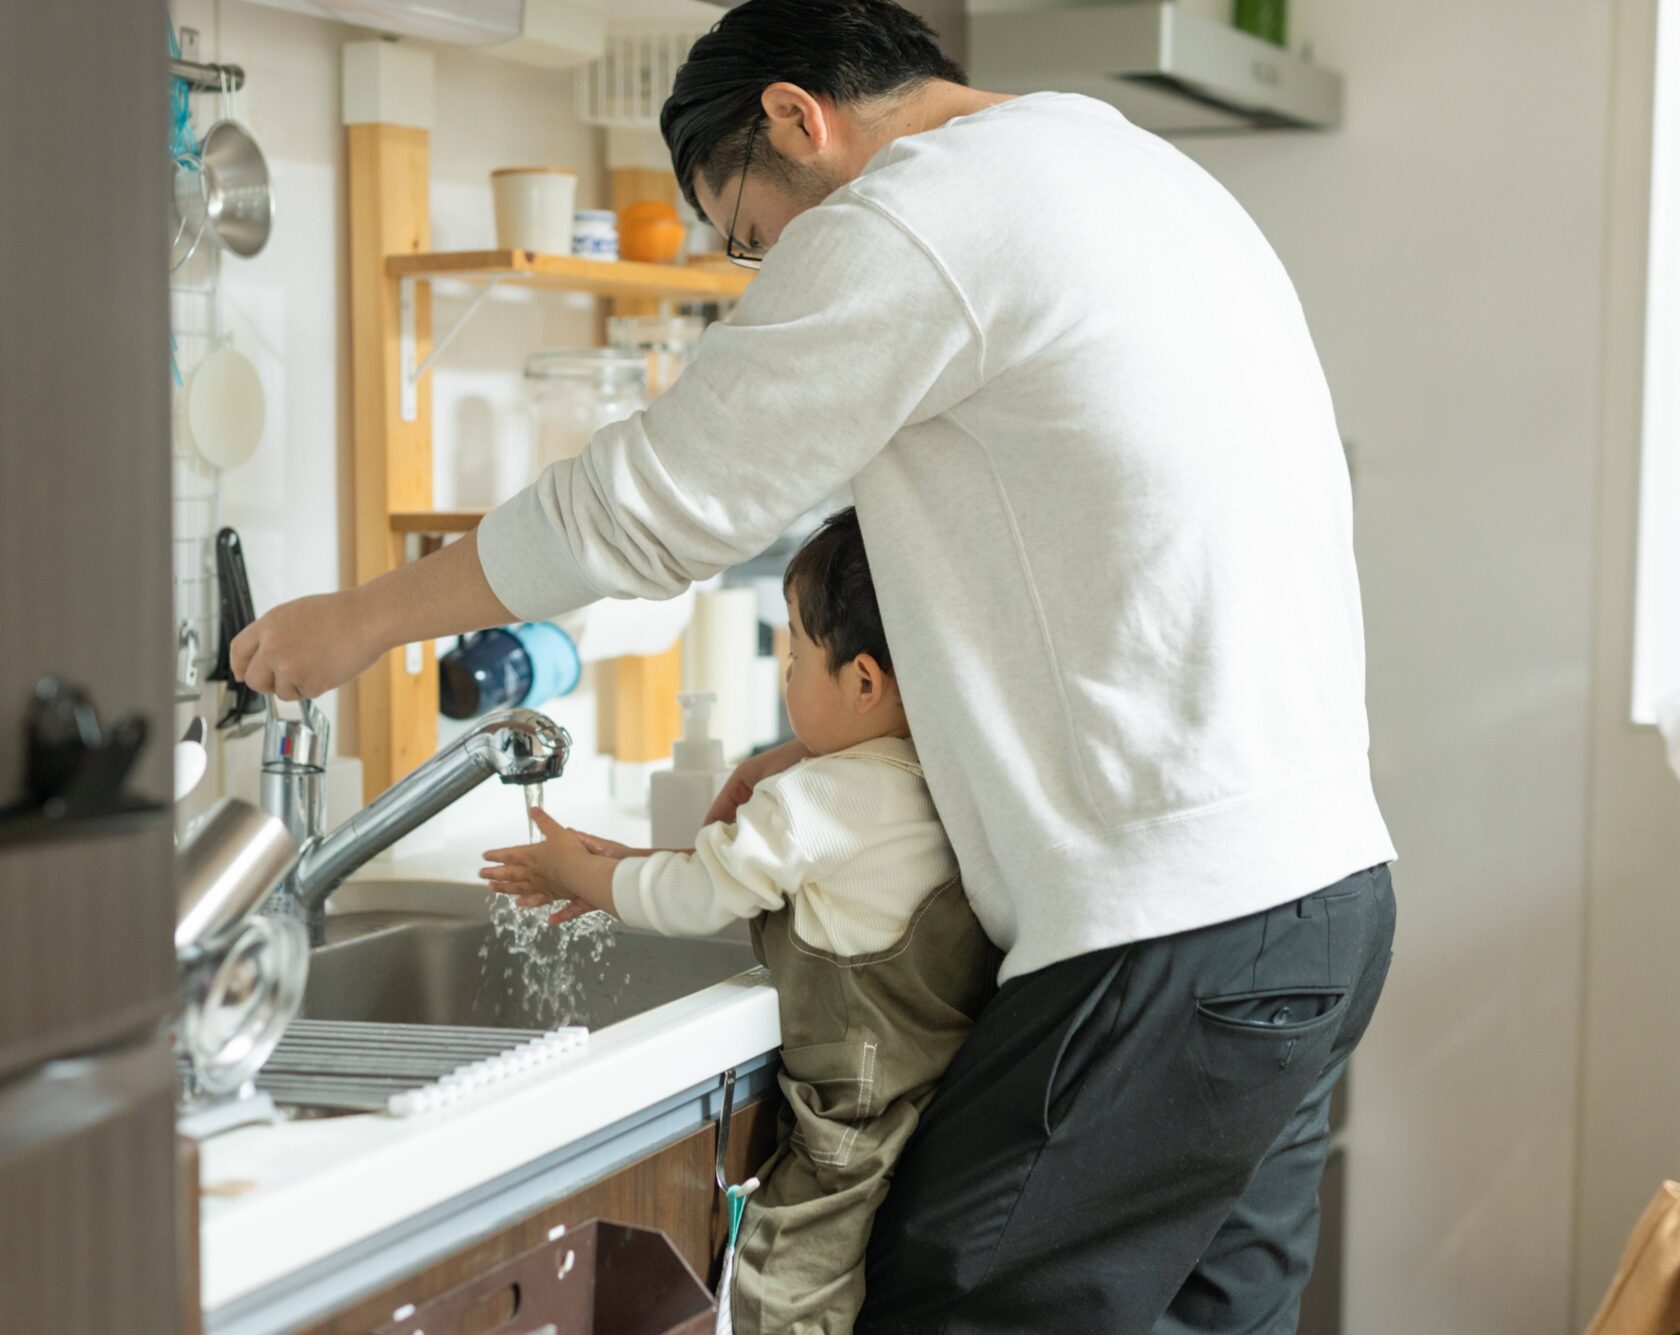 man and child washing hands under sink